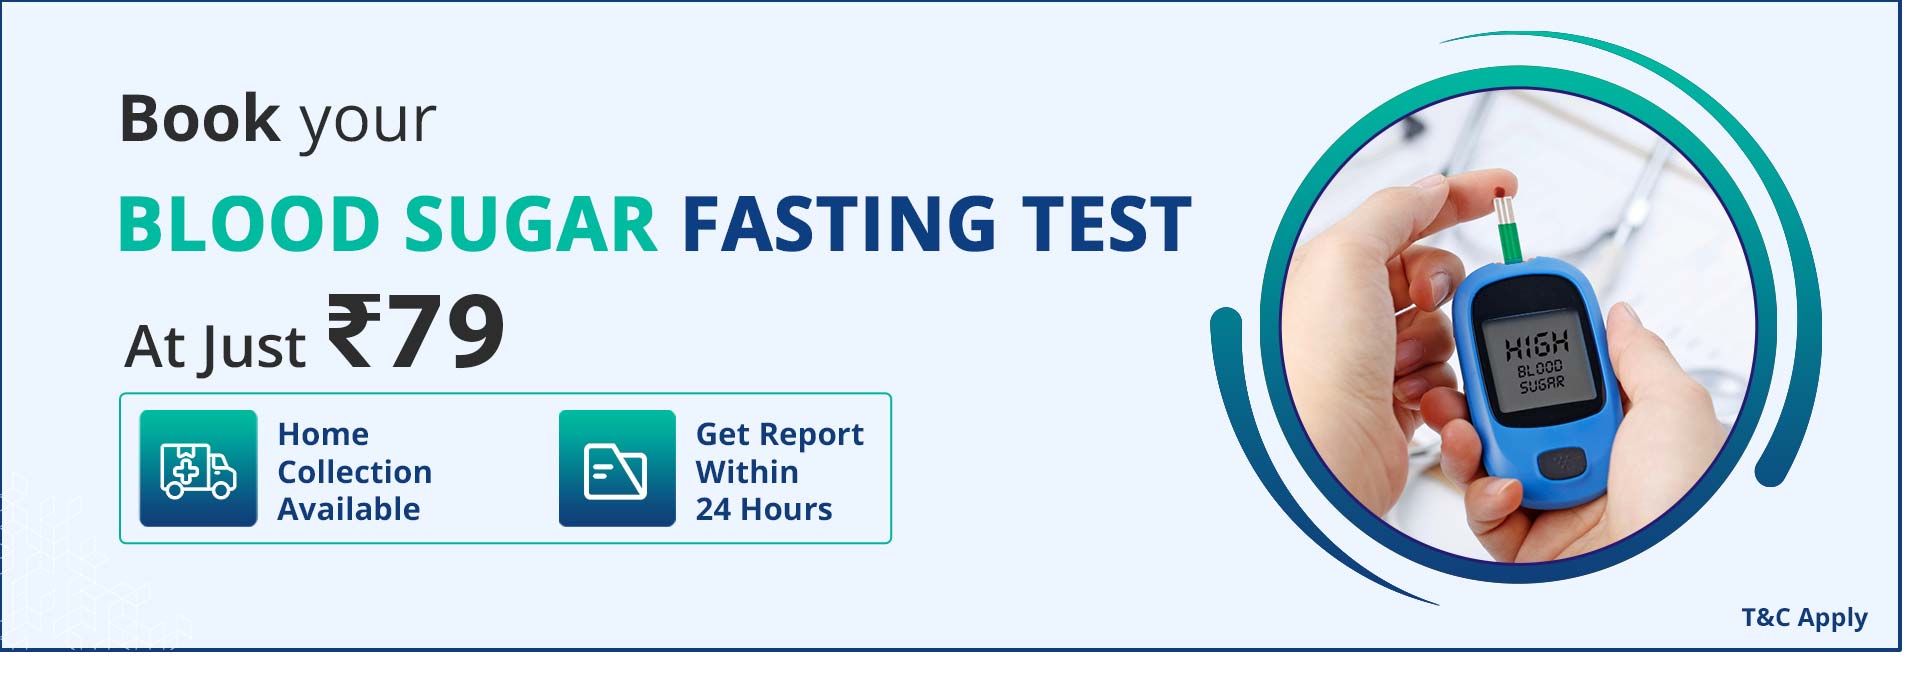 Blood Sugar Fasting Test